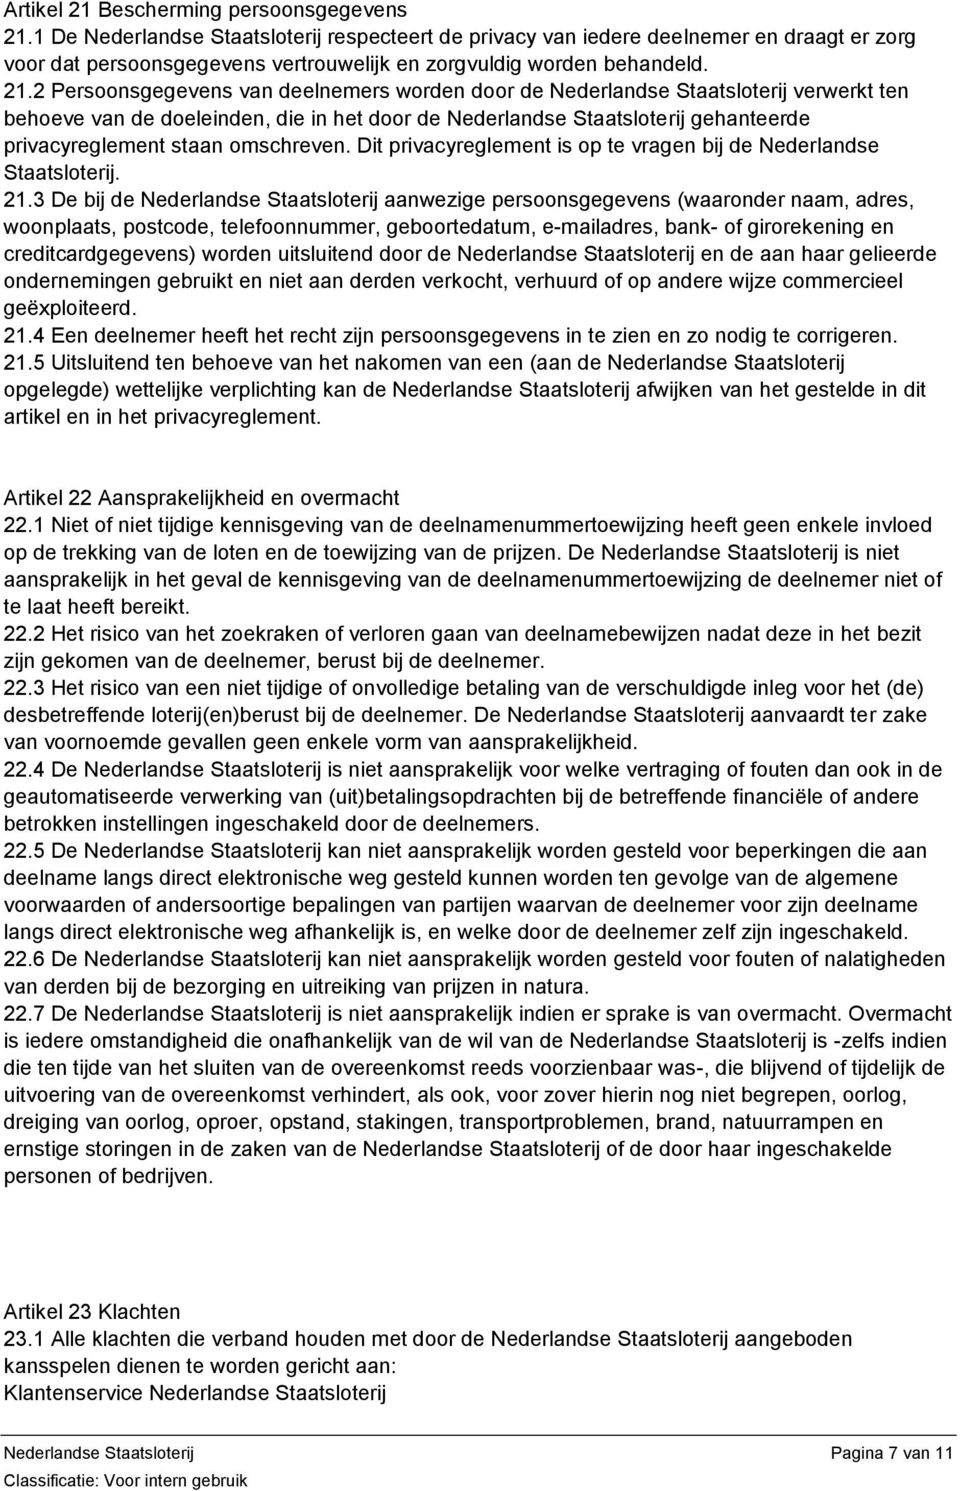 2 Persoonsgegevens van deelnemers worden door de Nederlandse Staatsloterij verwerkt ten behoeve van de doeleinden, die in het door de Nederlandse Staatsloterij gehanteerde privacyreglement staan